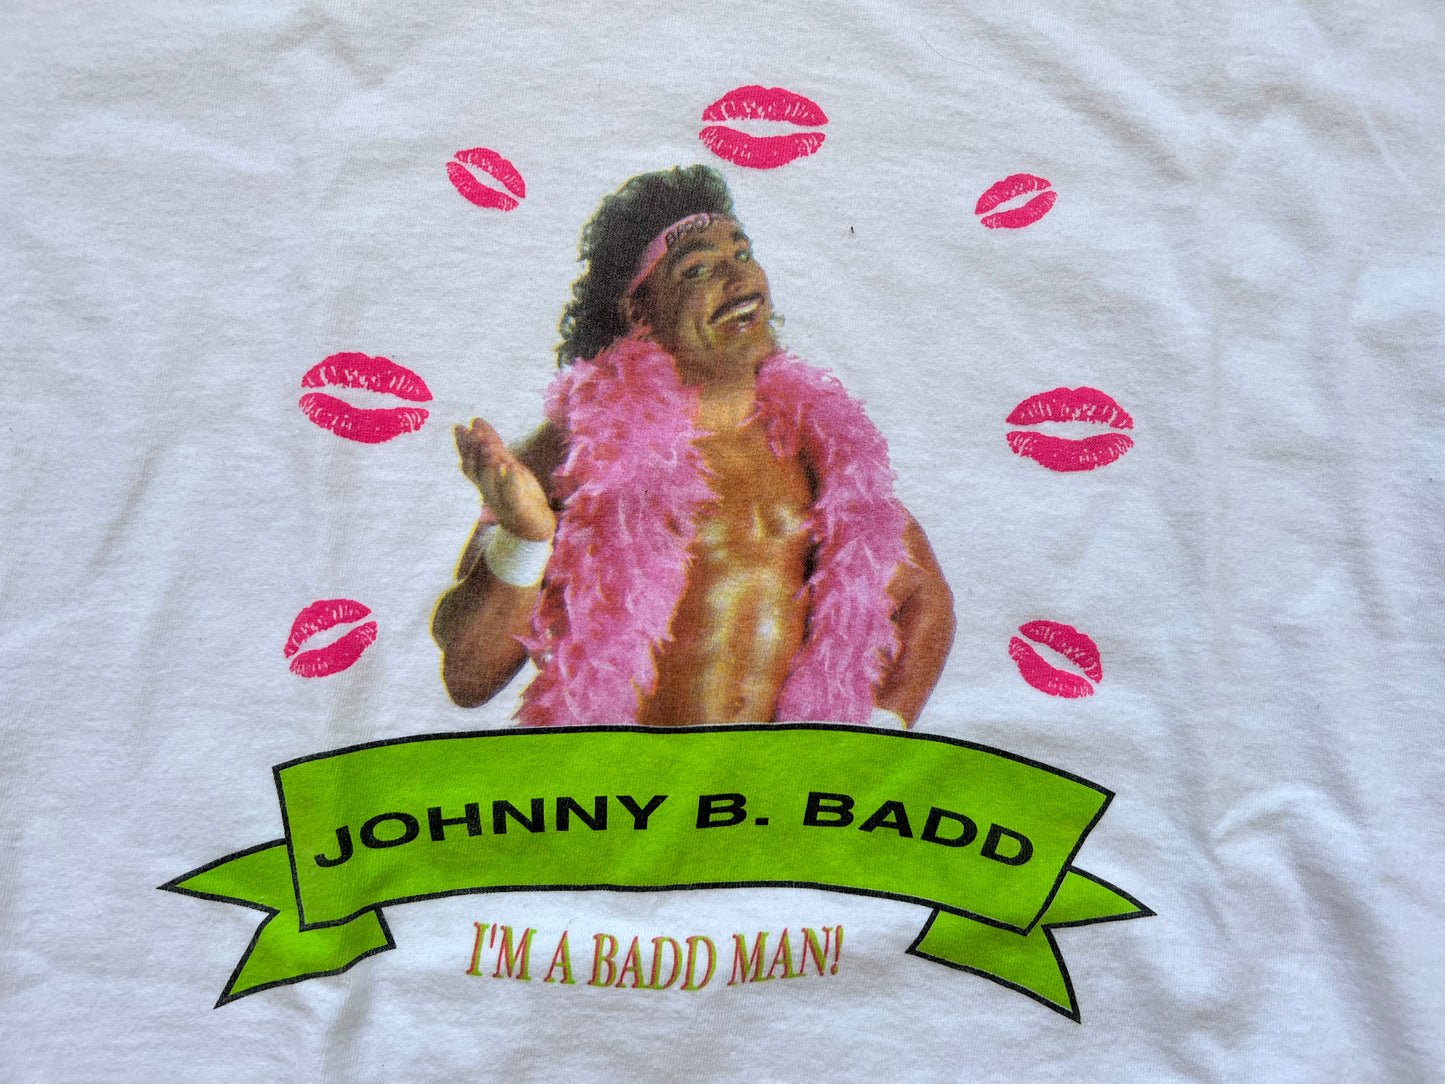 1992 WCW Johnny B Badd “I’m a Badd Man” shirt